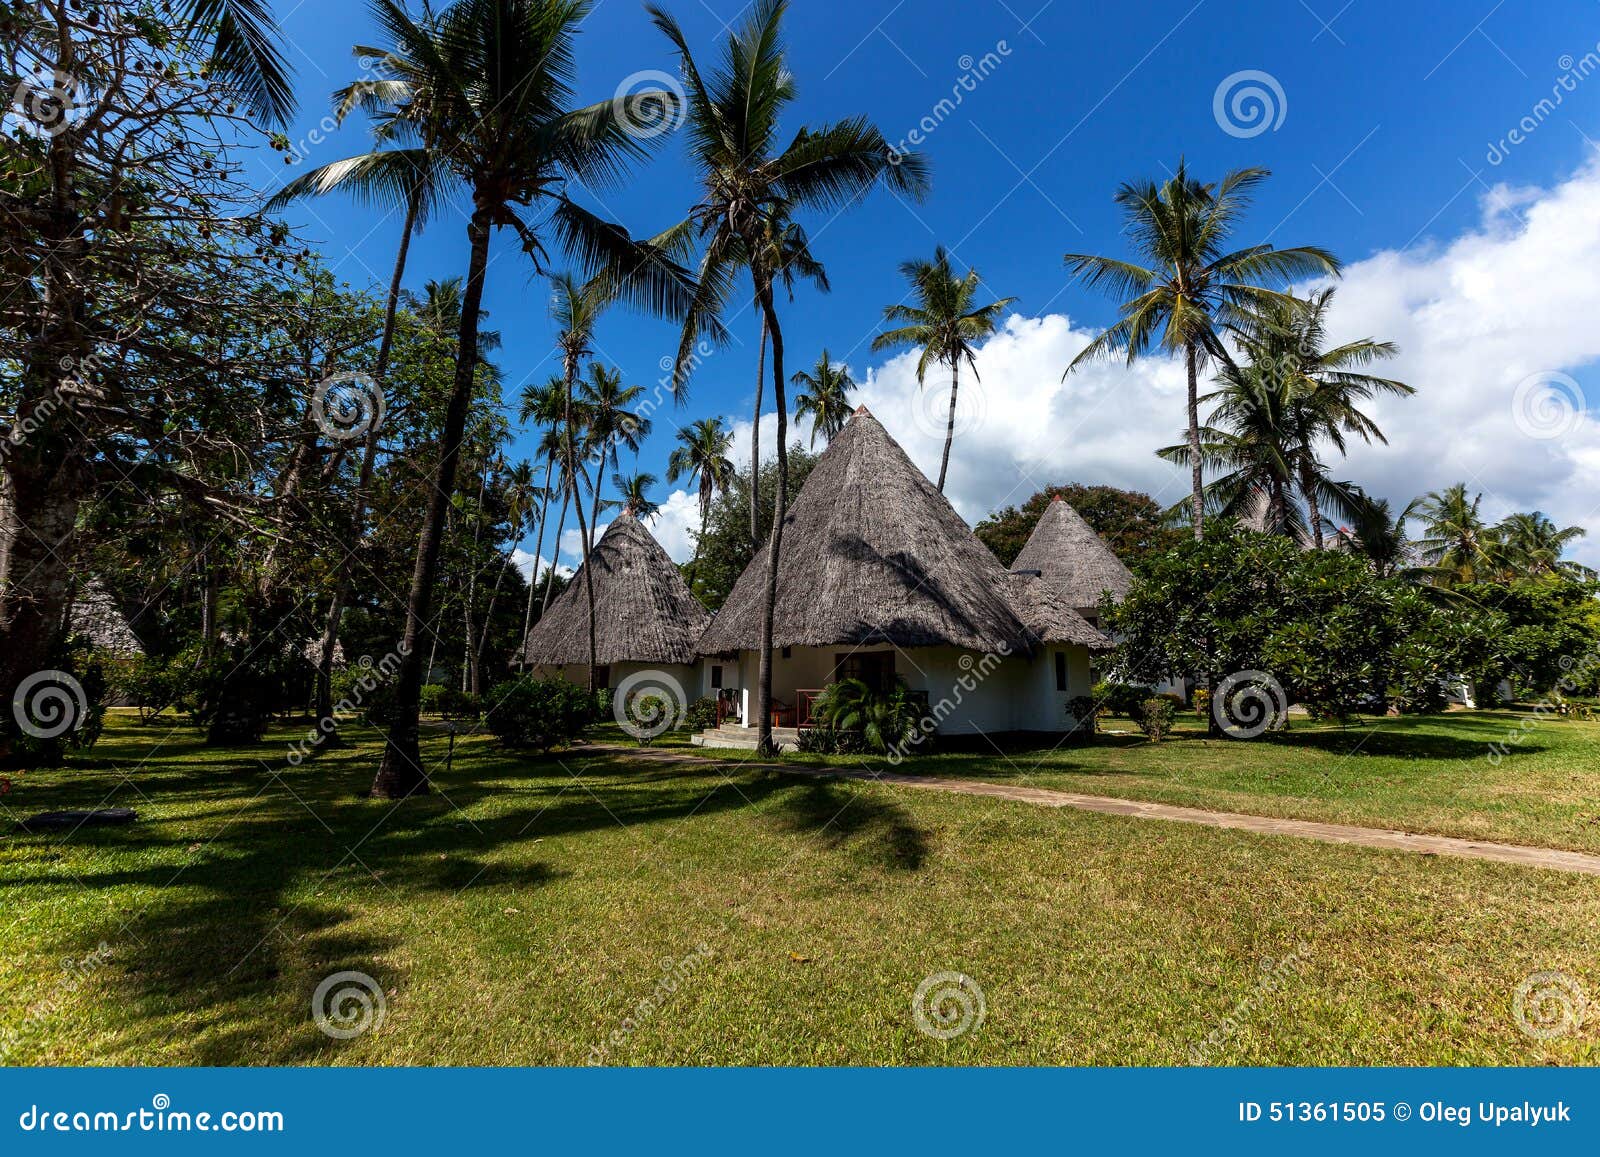 Vakantie, palmen, oceaan, hotel, vakantie,. Hotel met bungalowwen, palmen op het strand, vakantie in Kenia, geluid van de oceaan, ligstoelen op het strand, aard, mooi landschap